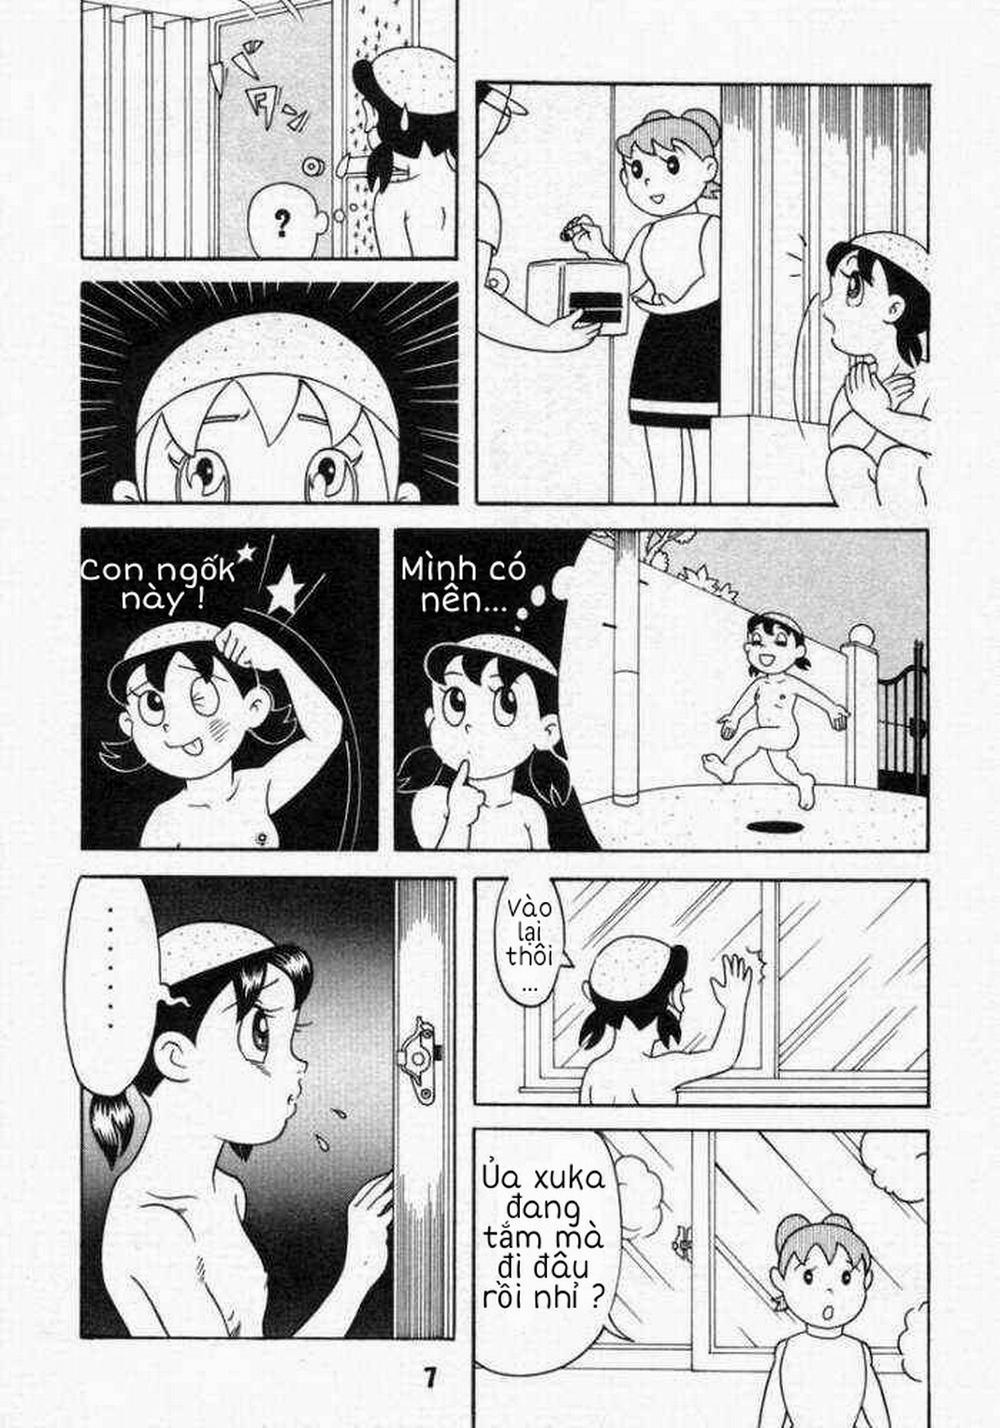 Tuyển Tập Doraemon Doujinshi 18+ Chương 10 Xuka v m t ng h nh Trang 5